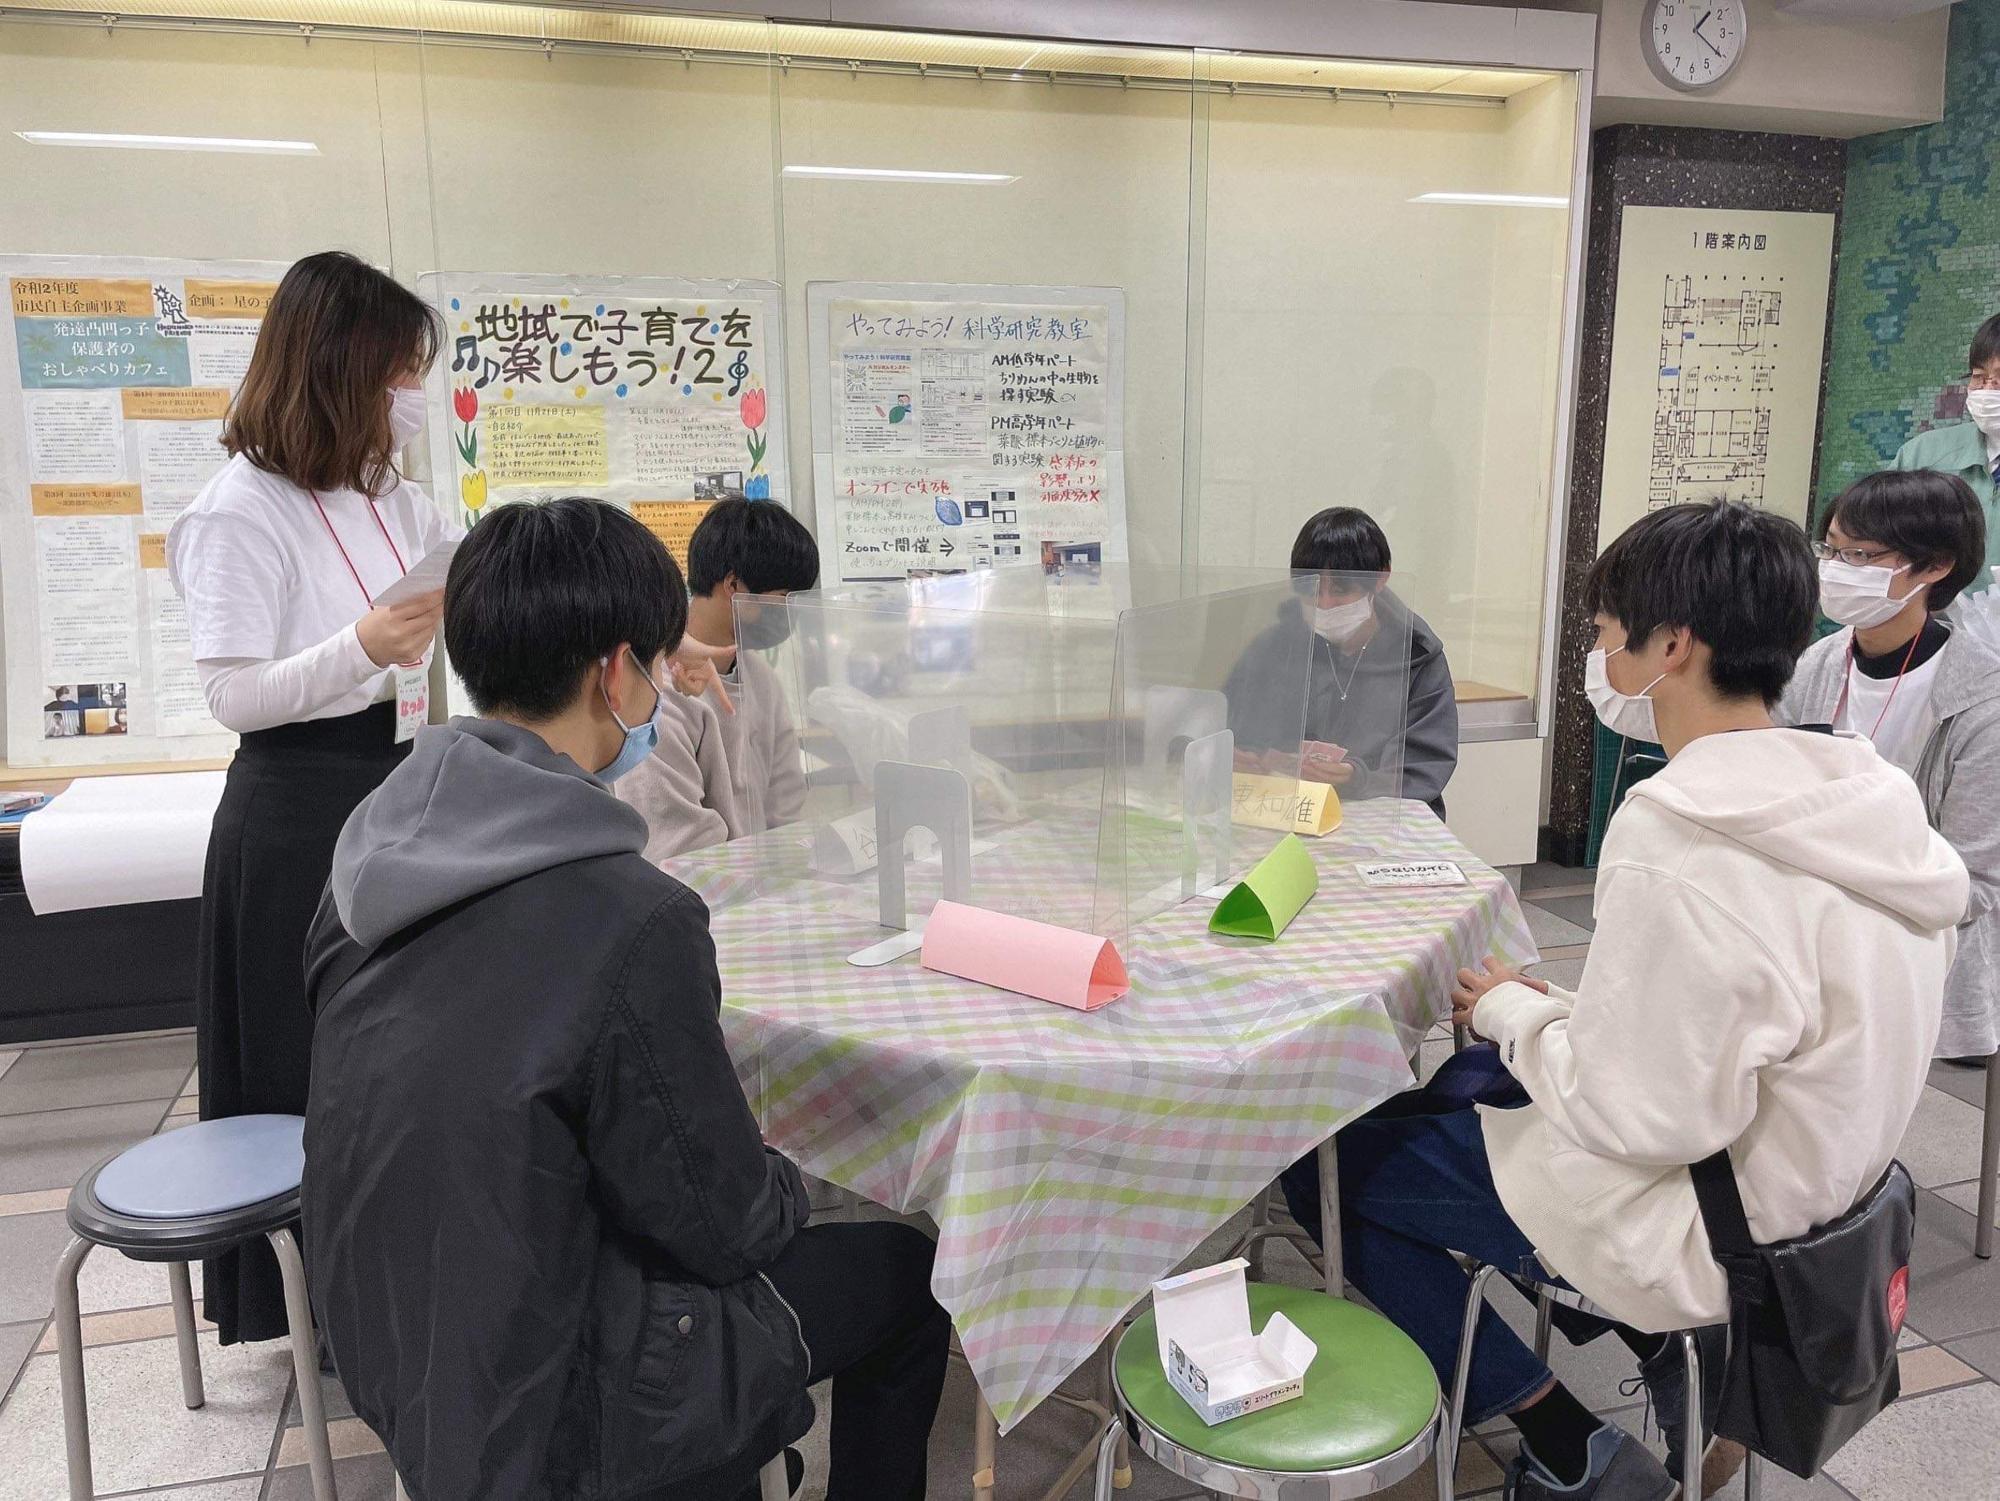 ゲーム、勉強、コミュニケーション、なんでもOKの若者向けコミュニティカフェ「くえすとかふぇPre☆」。昨年12月、感染対策をし、川崎市教育文化会館にてプレイベントとして2日間開催。大いに盛り上がった。